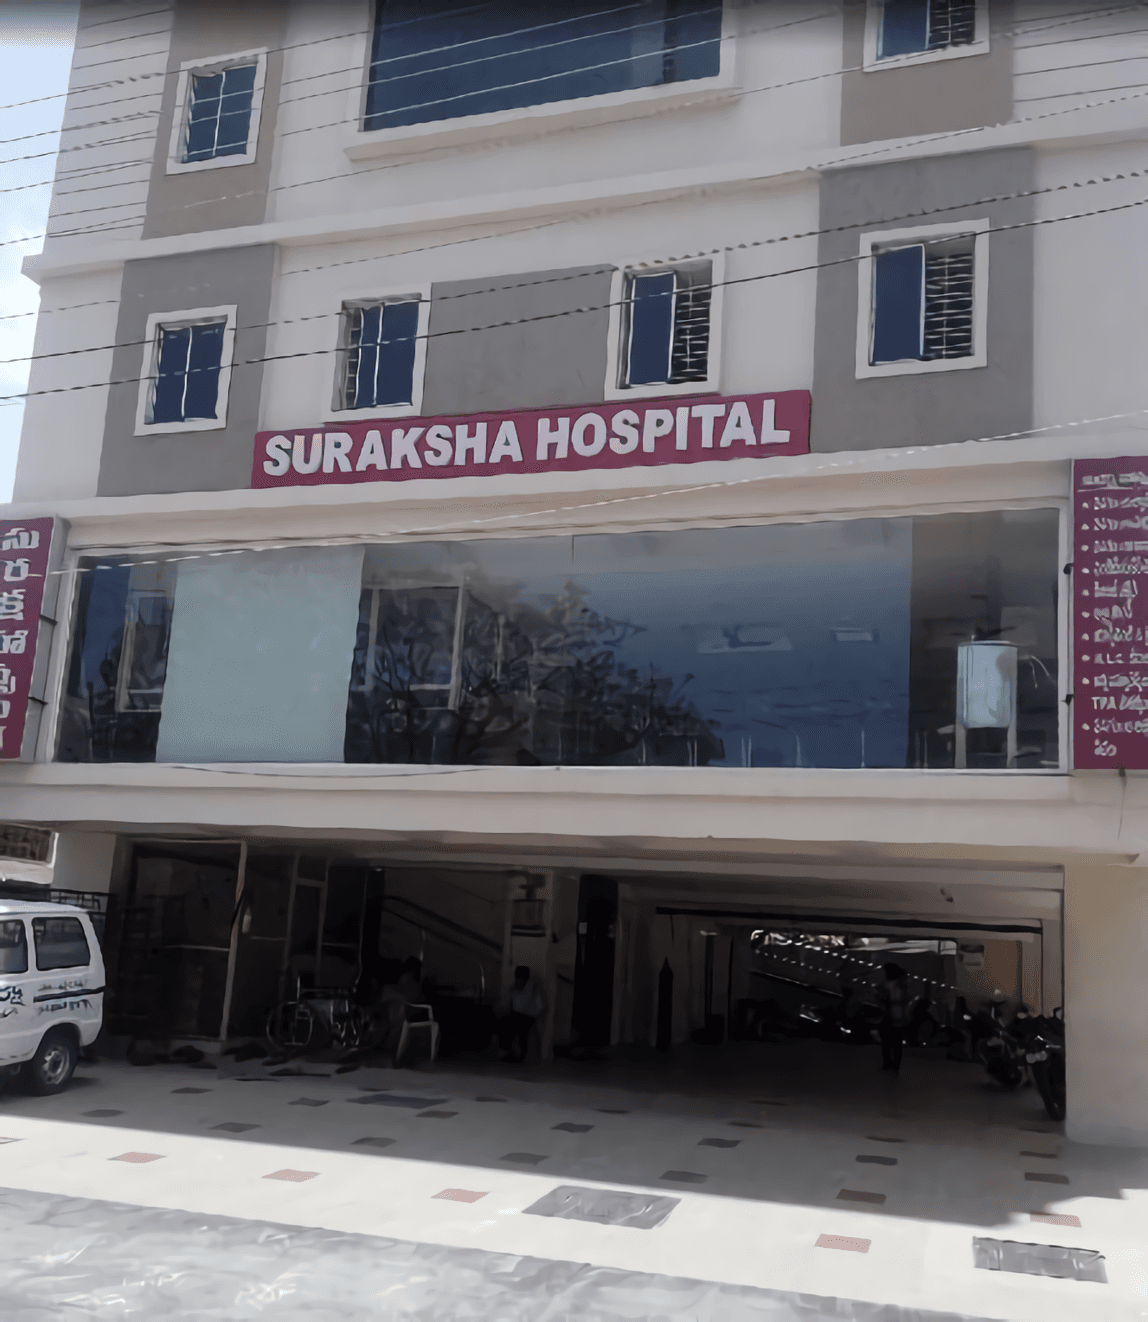 Suraksha Hospital